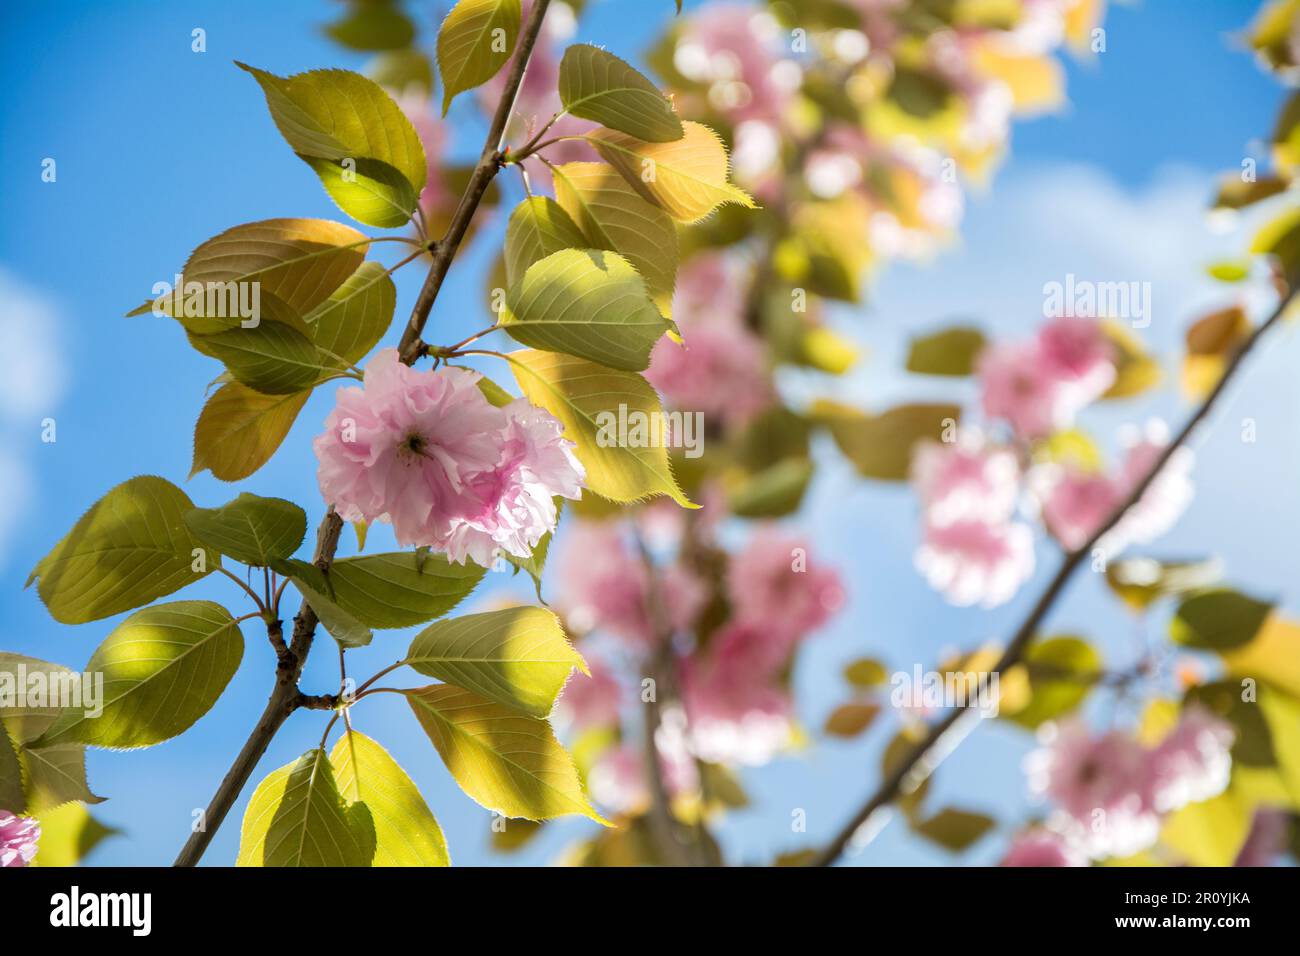 Gros plan d'une branche de cerise japonaise (Prunus Kanzan) lors d'une journée ensoleillée au printemps avec beaucoup de belles fleurs roses. Image horizontale avec sélection Banque D'Images